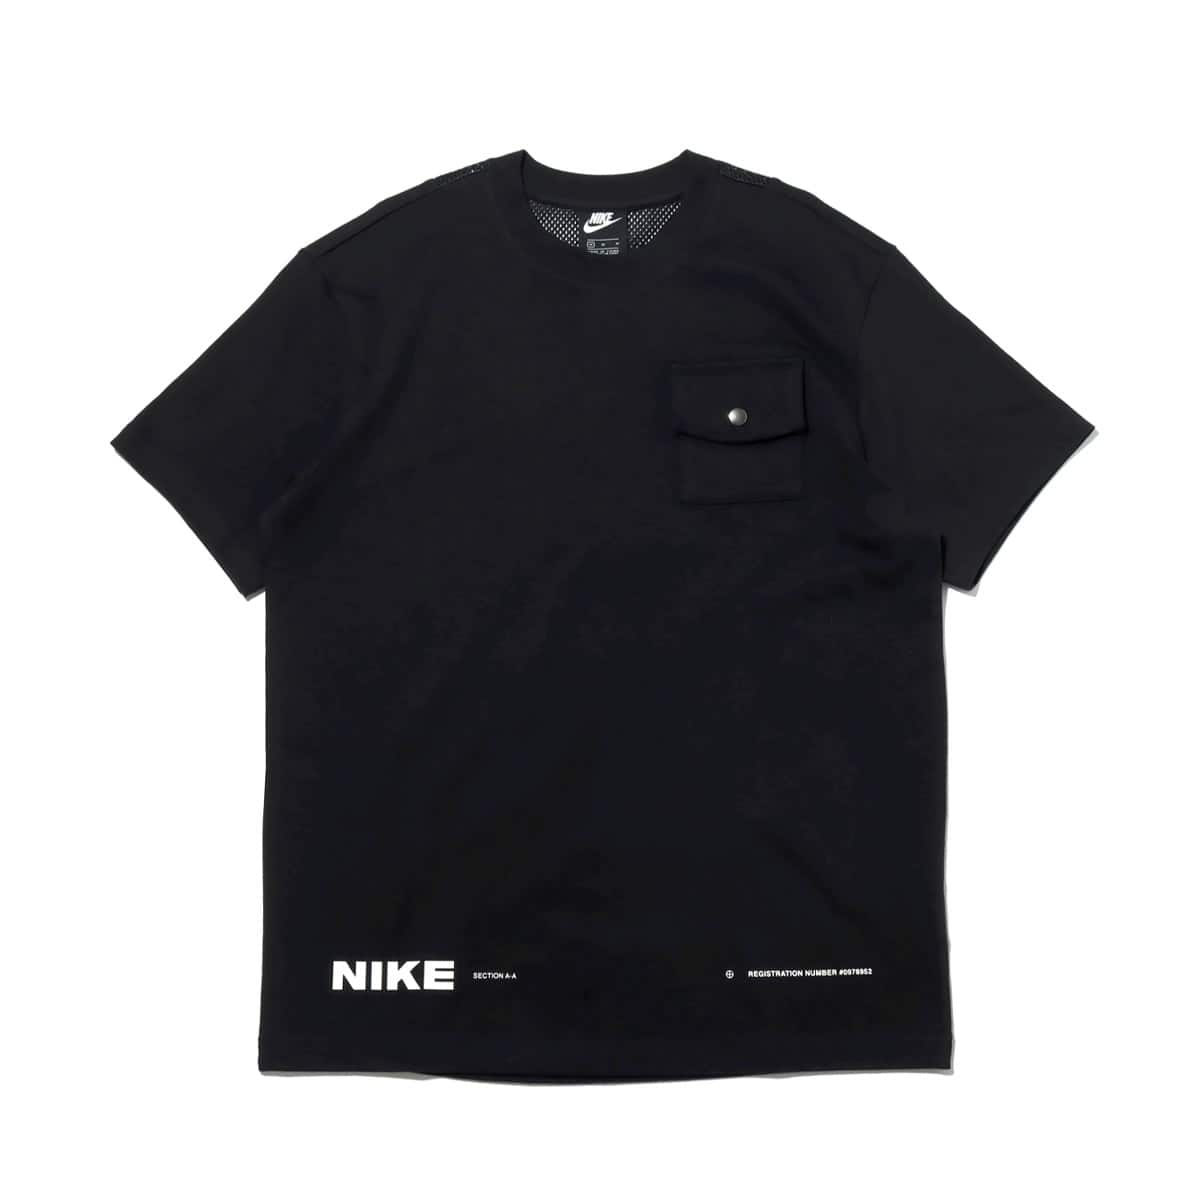 袋から一度も出していませんNIKE M TOKYO シティパック S/S Tシャツ 黒